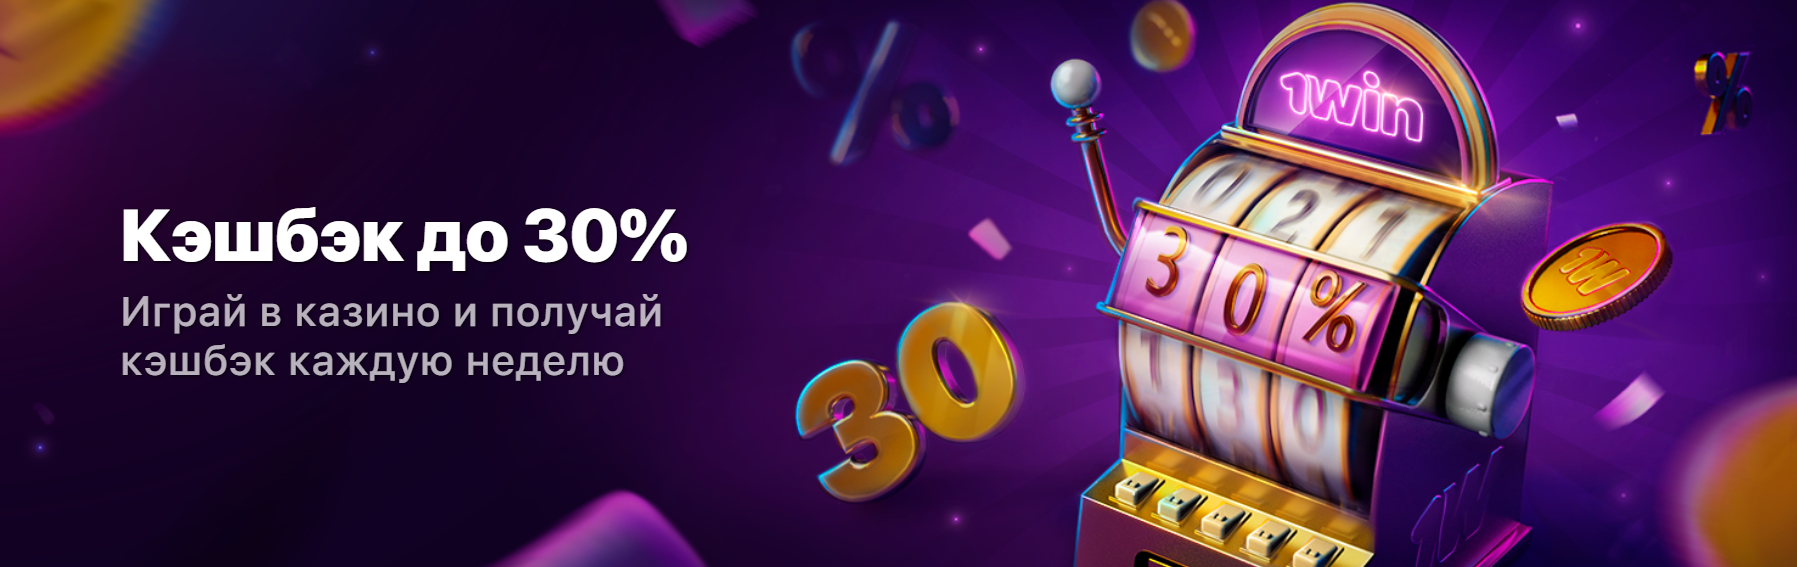 Рейтинг казино Украина: как выбрать надежное заведение для игры в интернете 1win-casino-baner2-ua